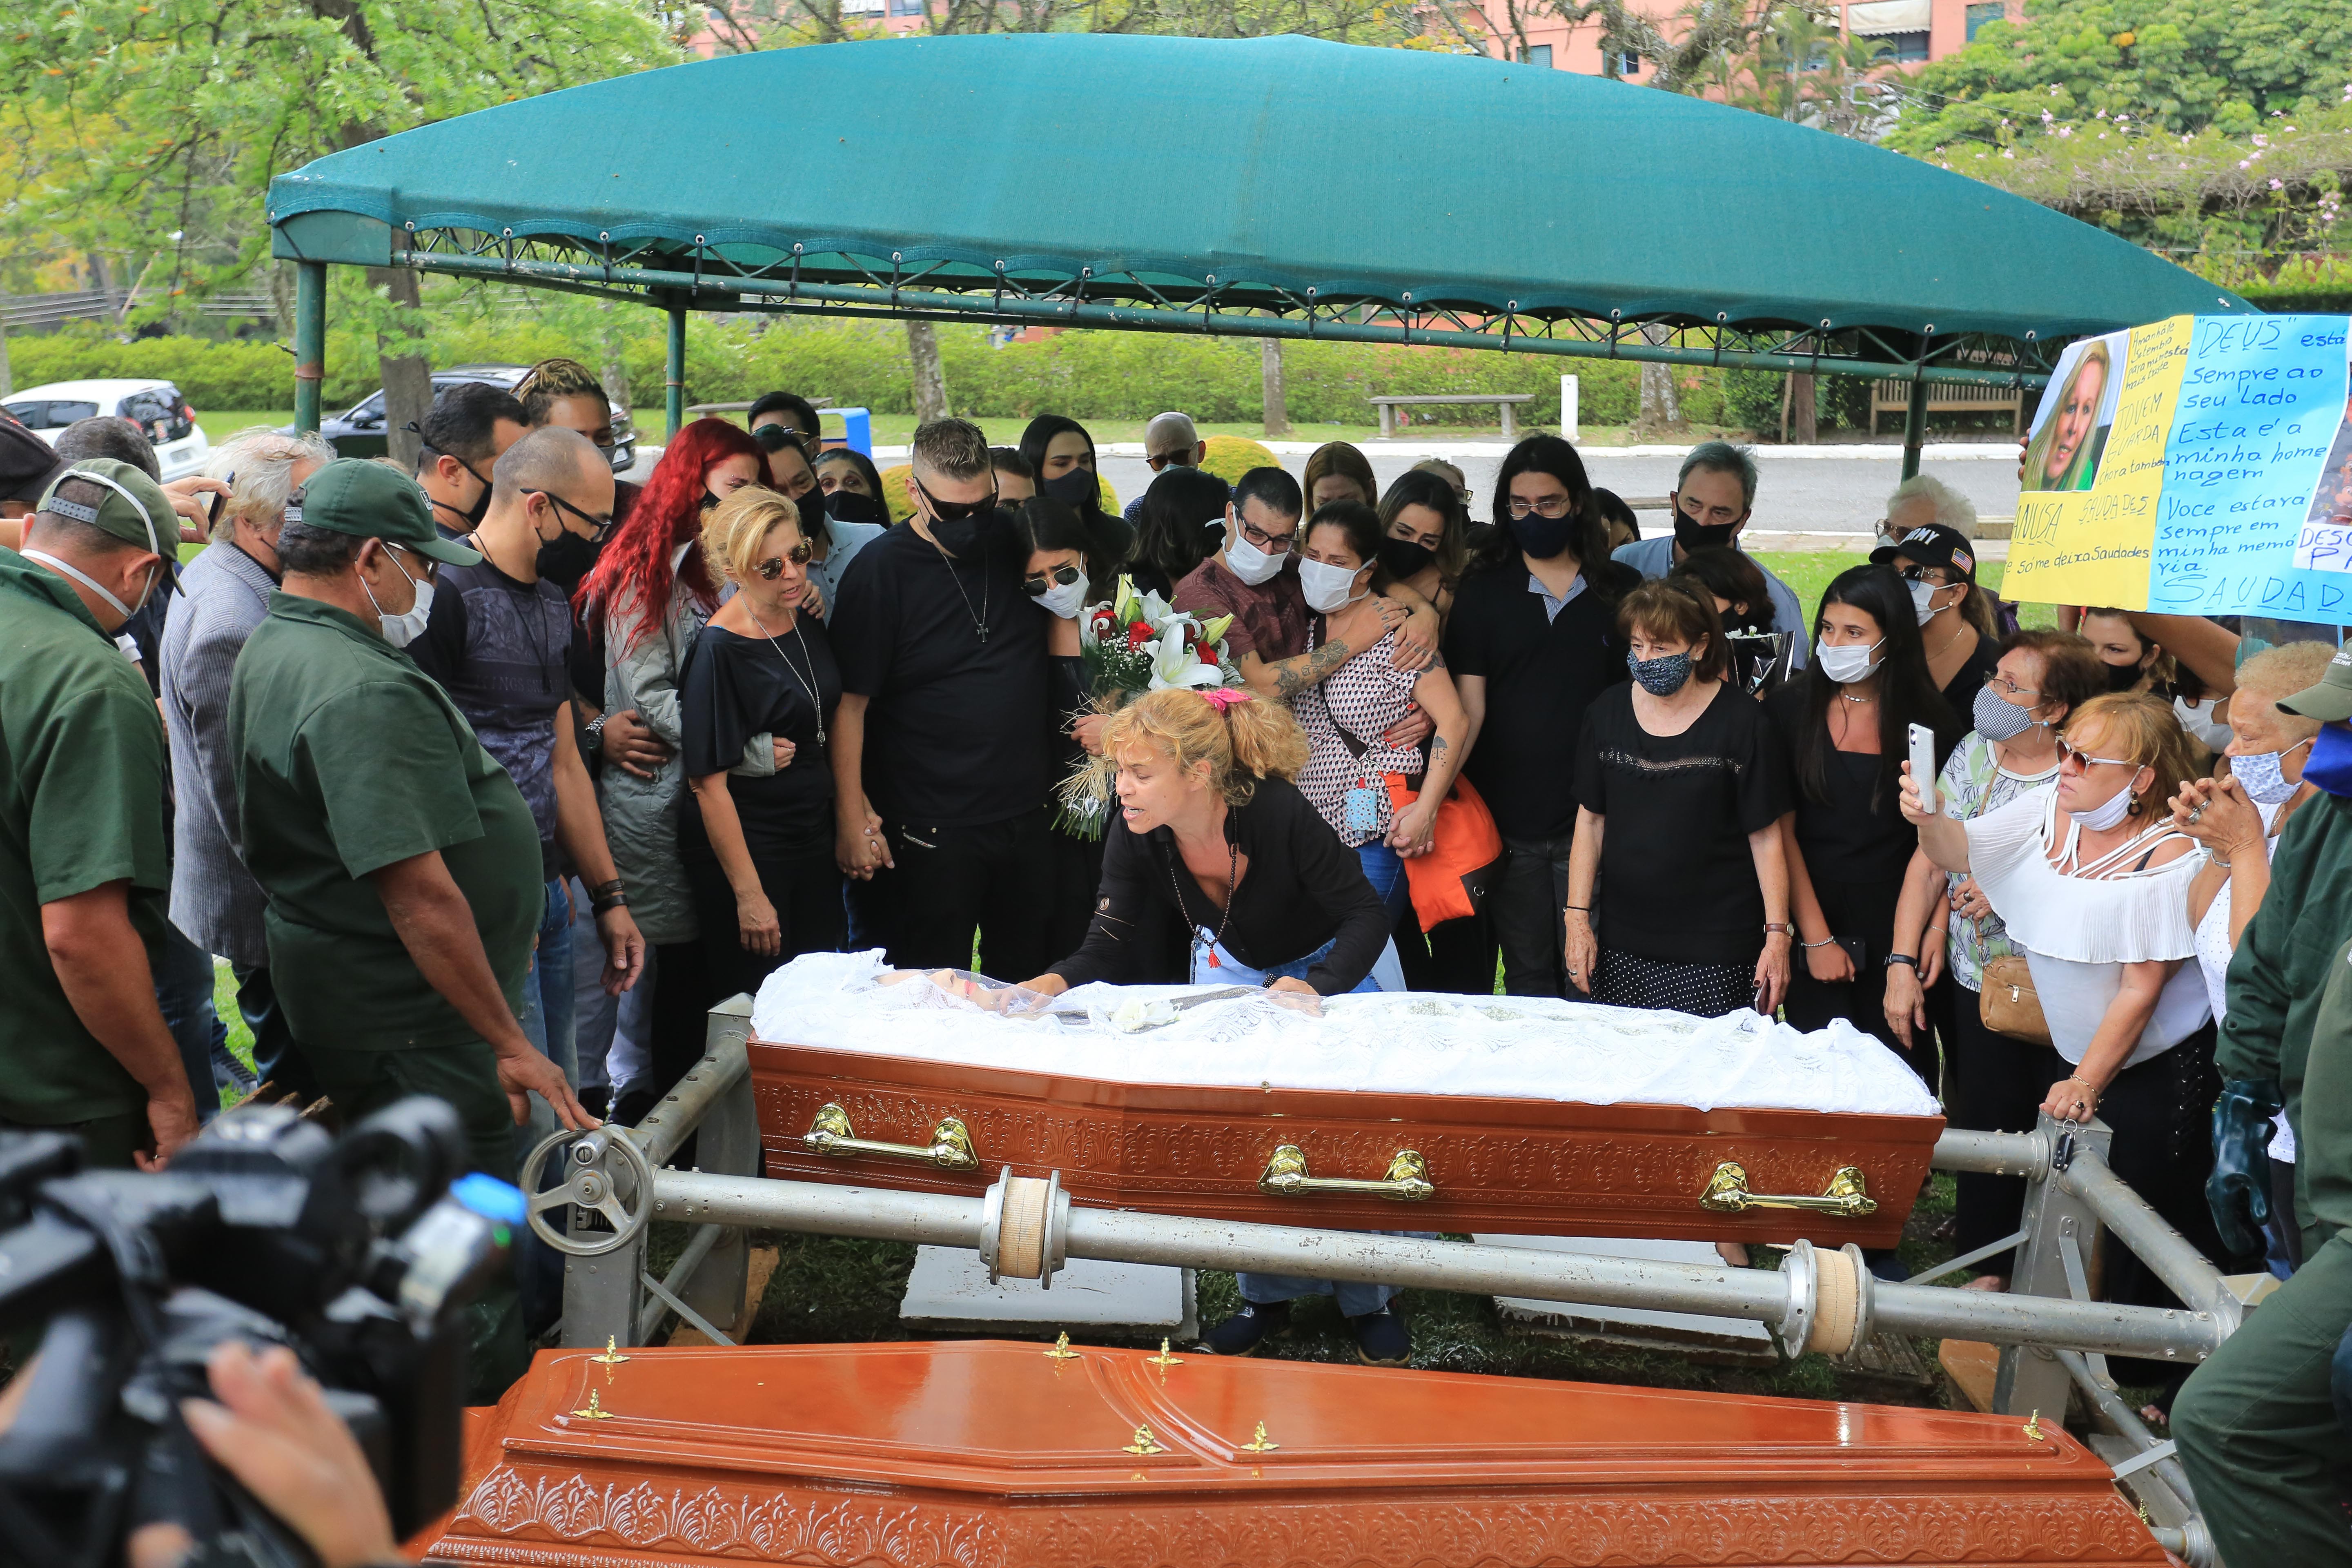 Familiares e amigos se despedem de Vanusa (Foto: Amauri Nehn/Brazil News)